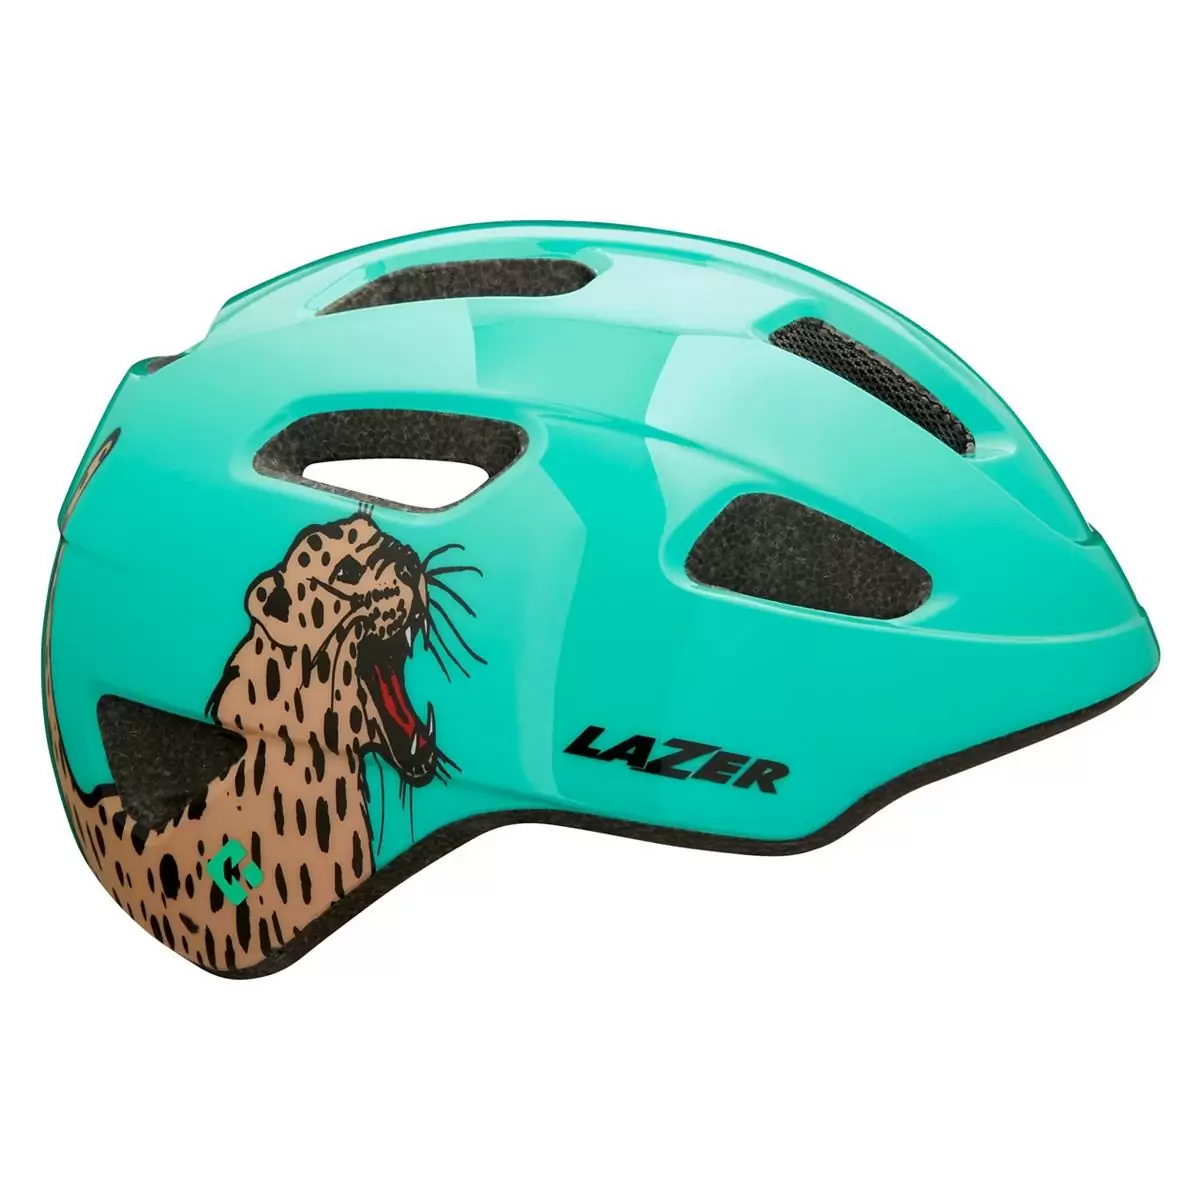 Nutz Kids Helmet KinetiCore CE Roaring Cat Light Green One Size (50-56cm) - image